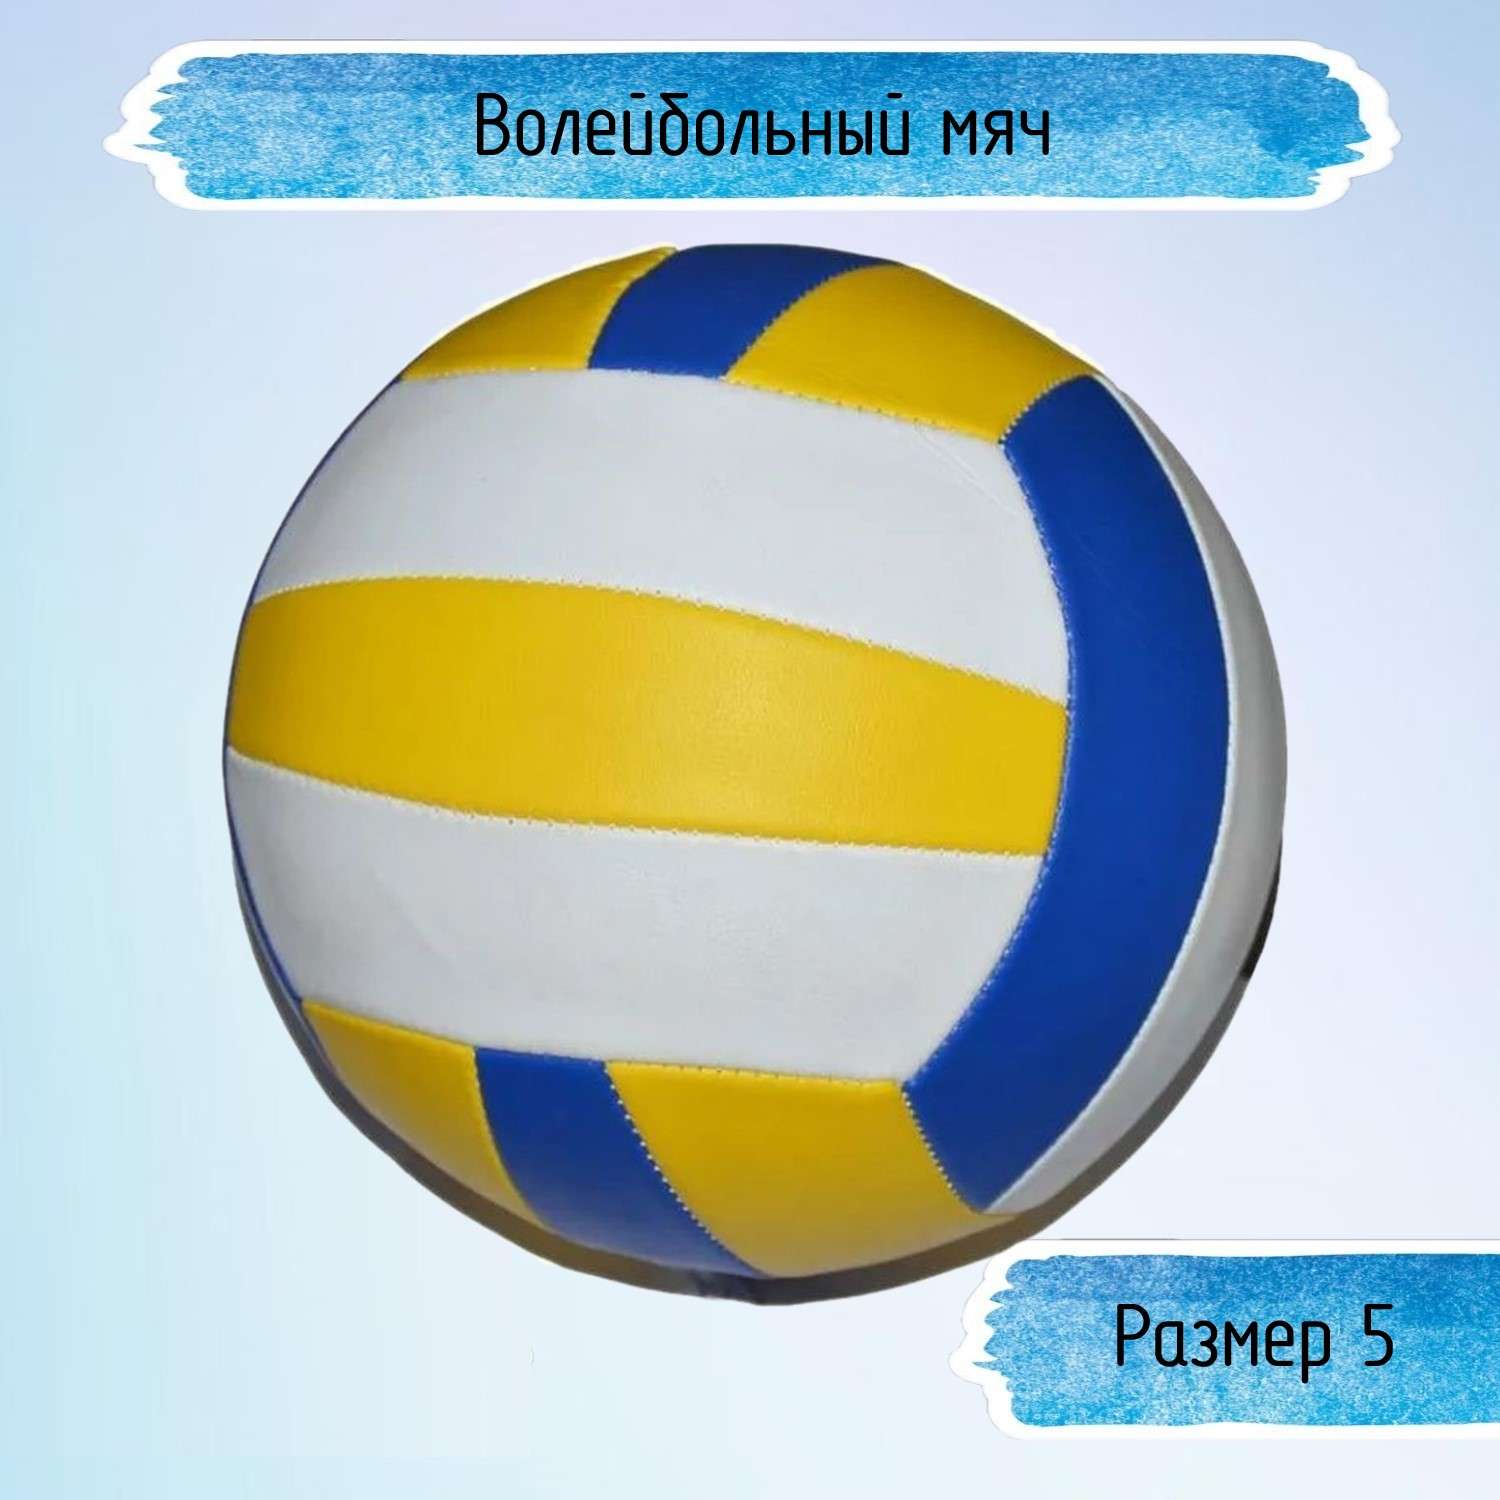 Волейбольный мяч Uniglodis трехцветный размер 5 - фото 1